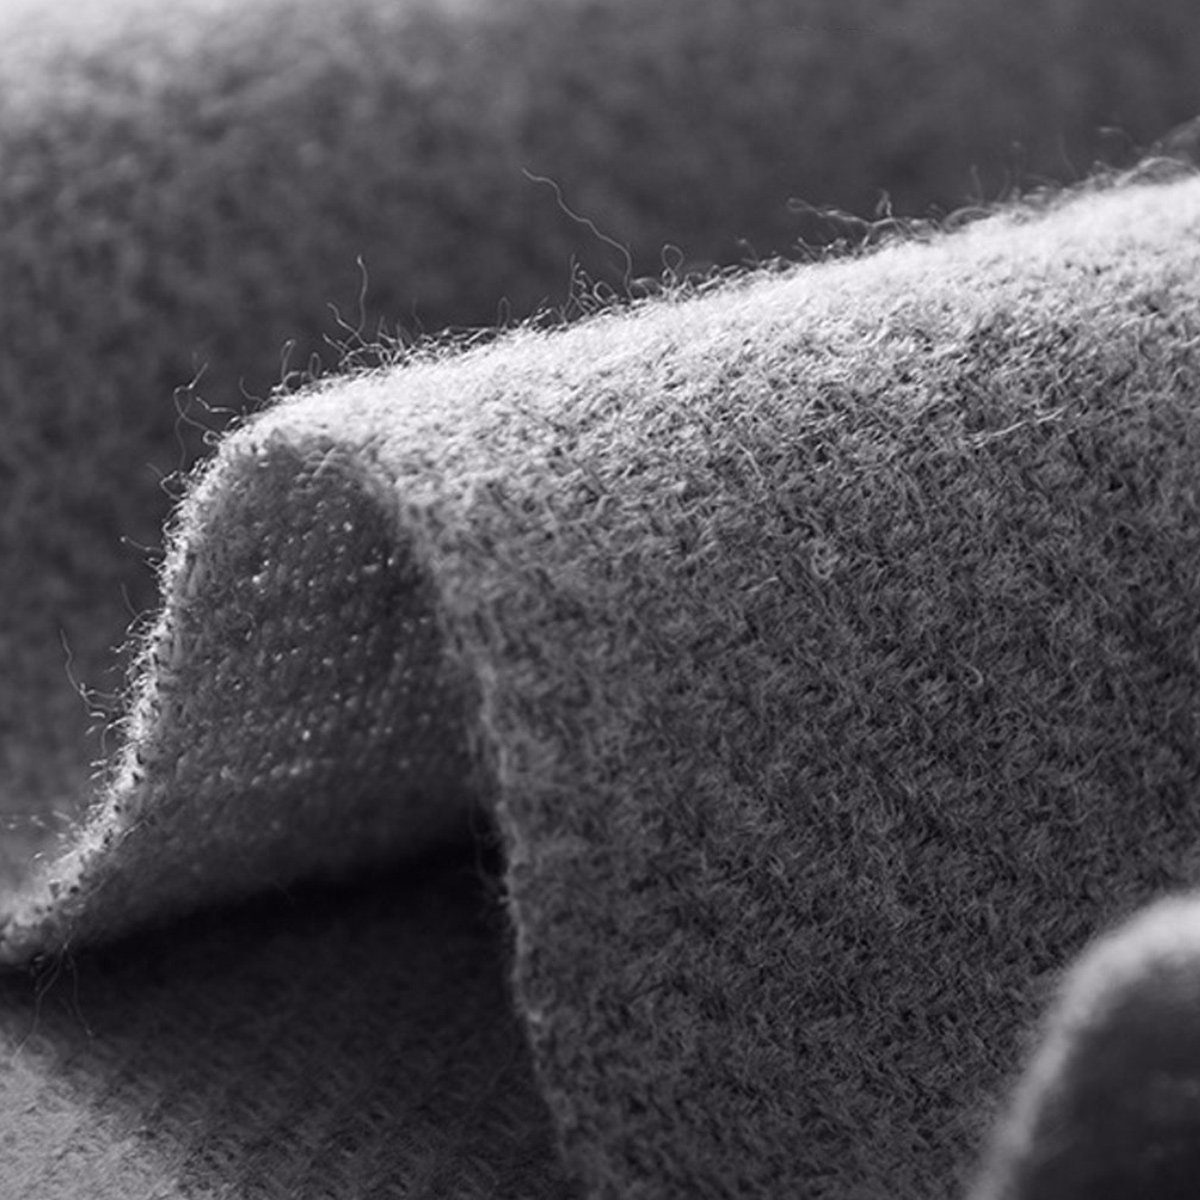 Jormftte Modeschal Damen Schal Stola Winter Schal Schals Warme Grau abendkleid für Für Frauen